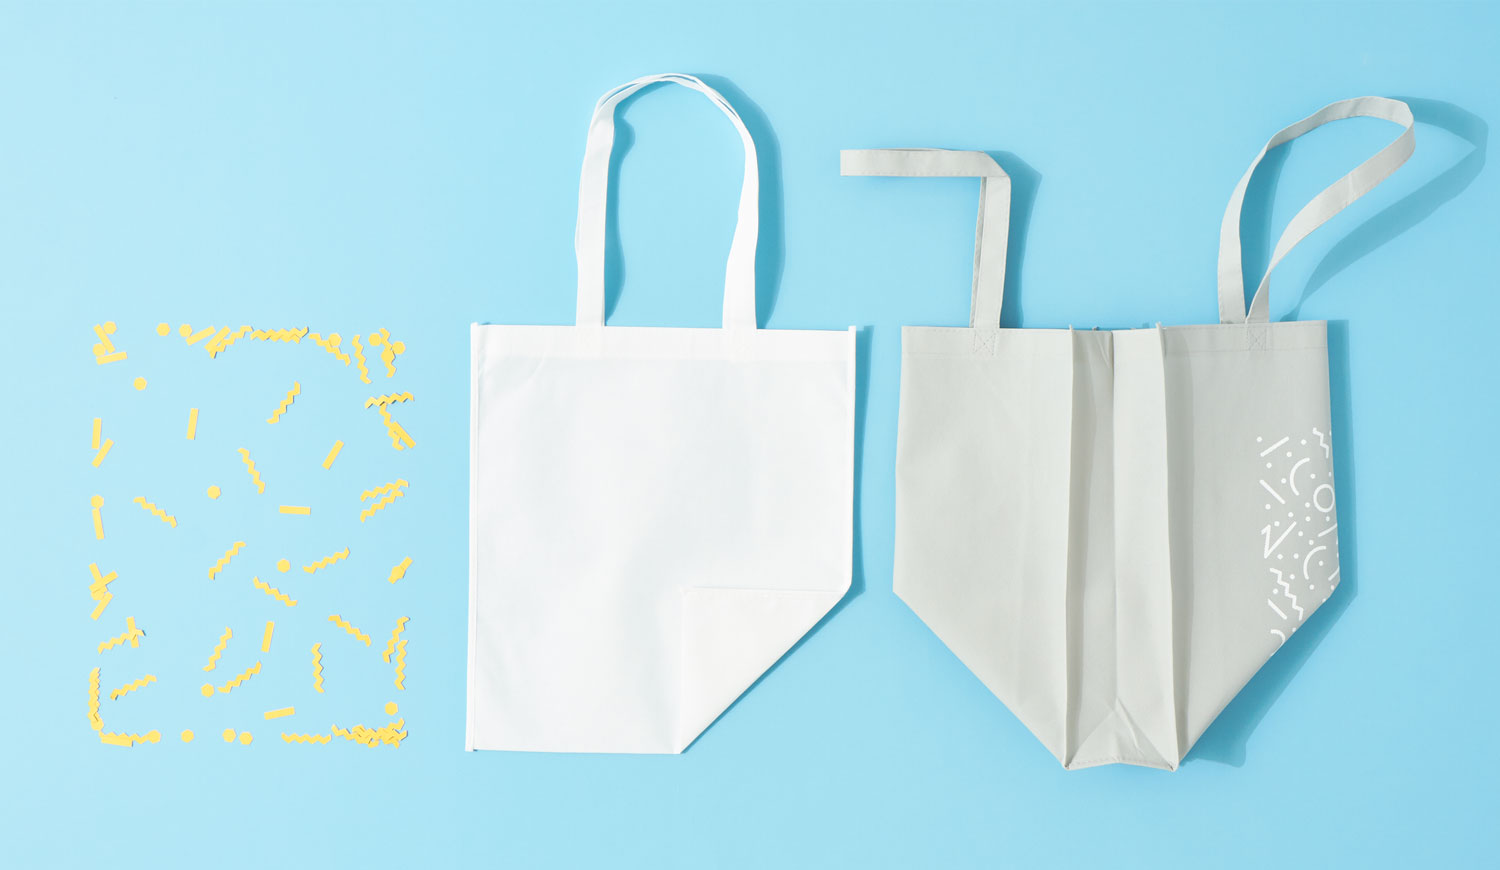 Tienda online bolsas de papel y tela, Packaging